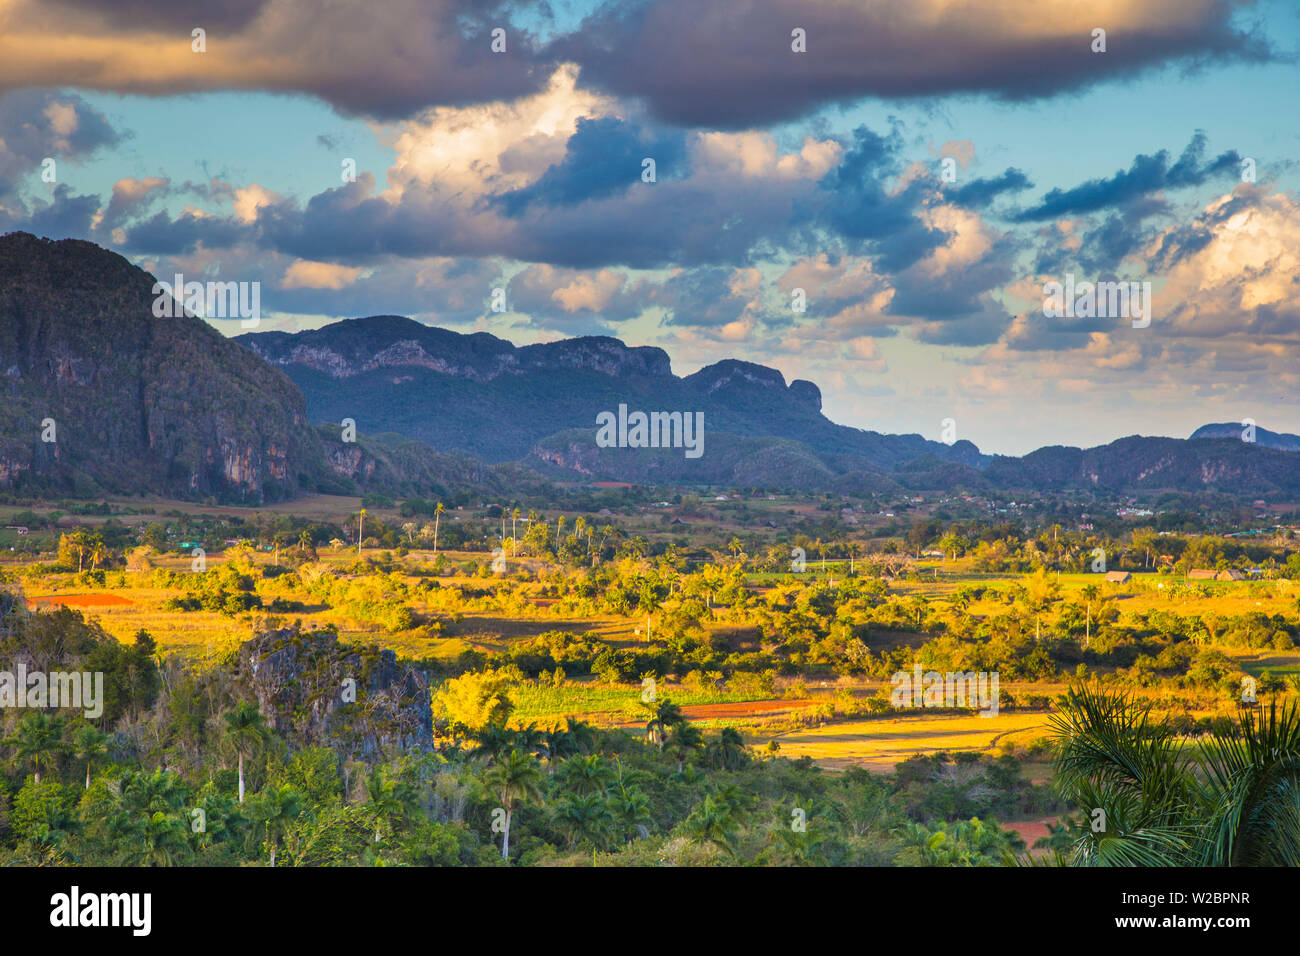 Vinales Valley, Pinar del Rio Province, Cuba Stock Photo